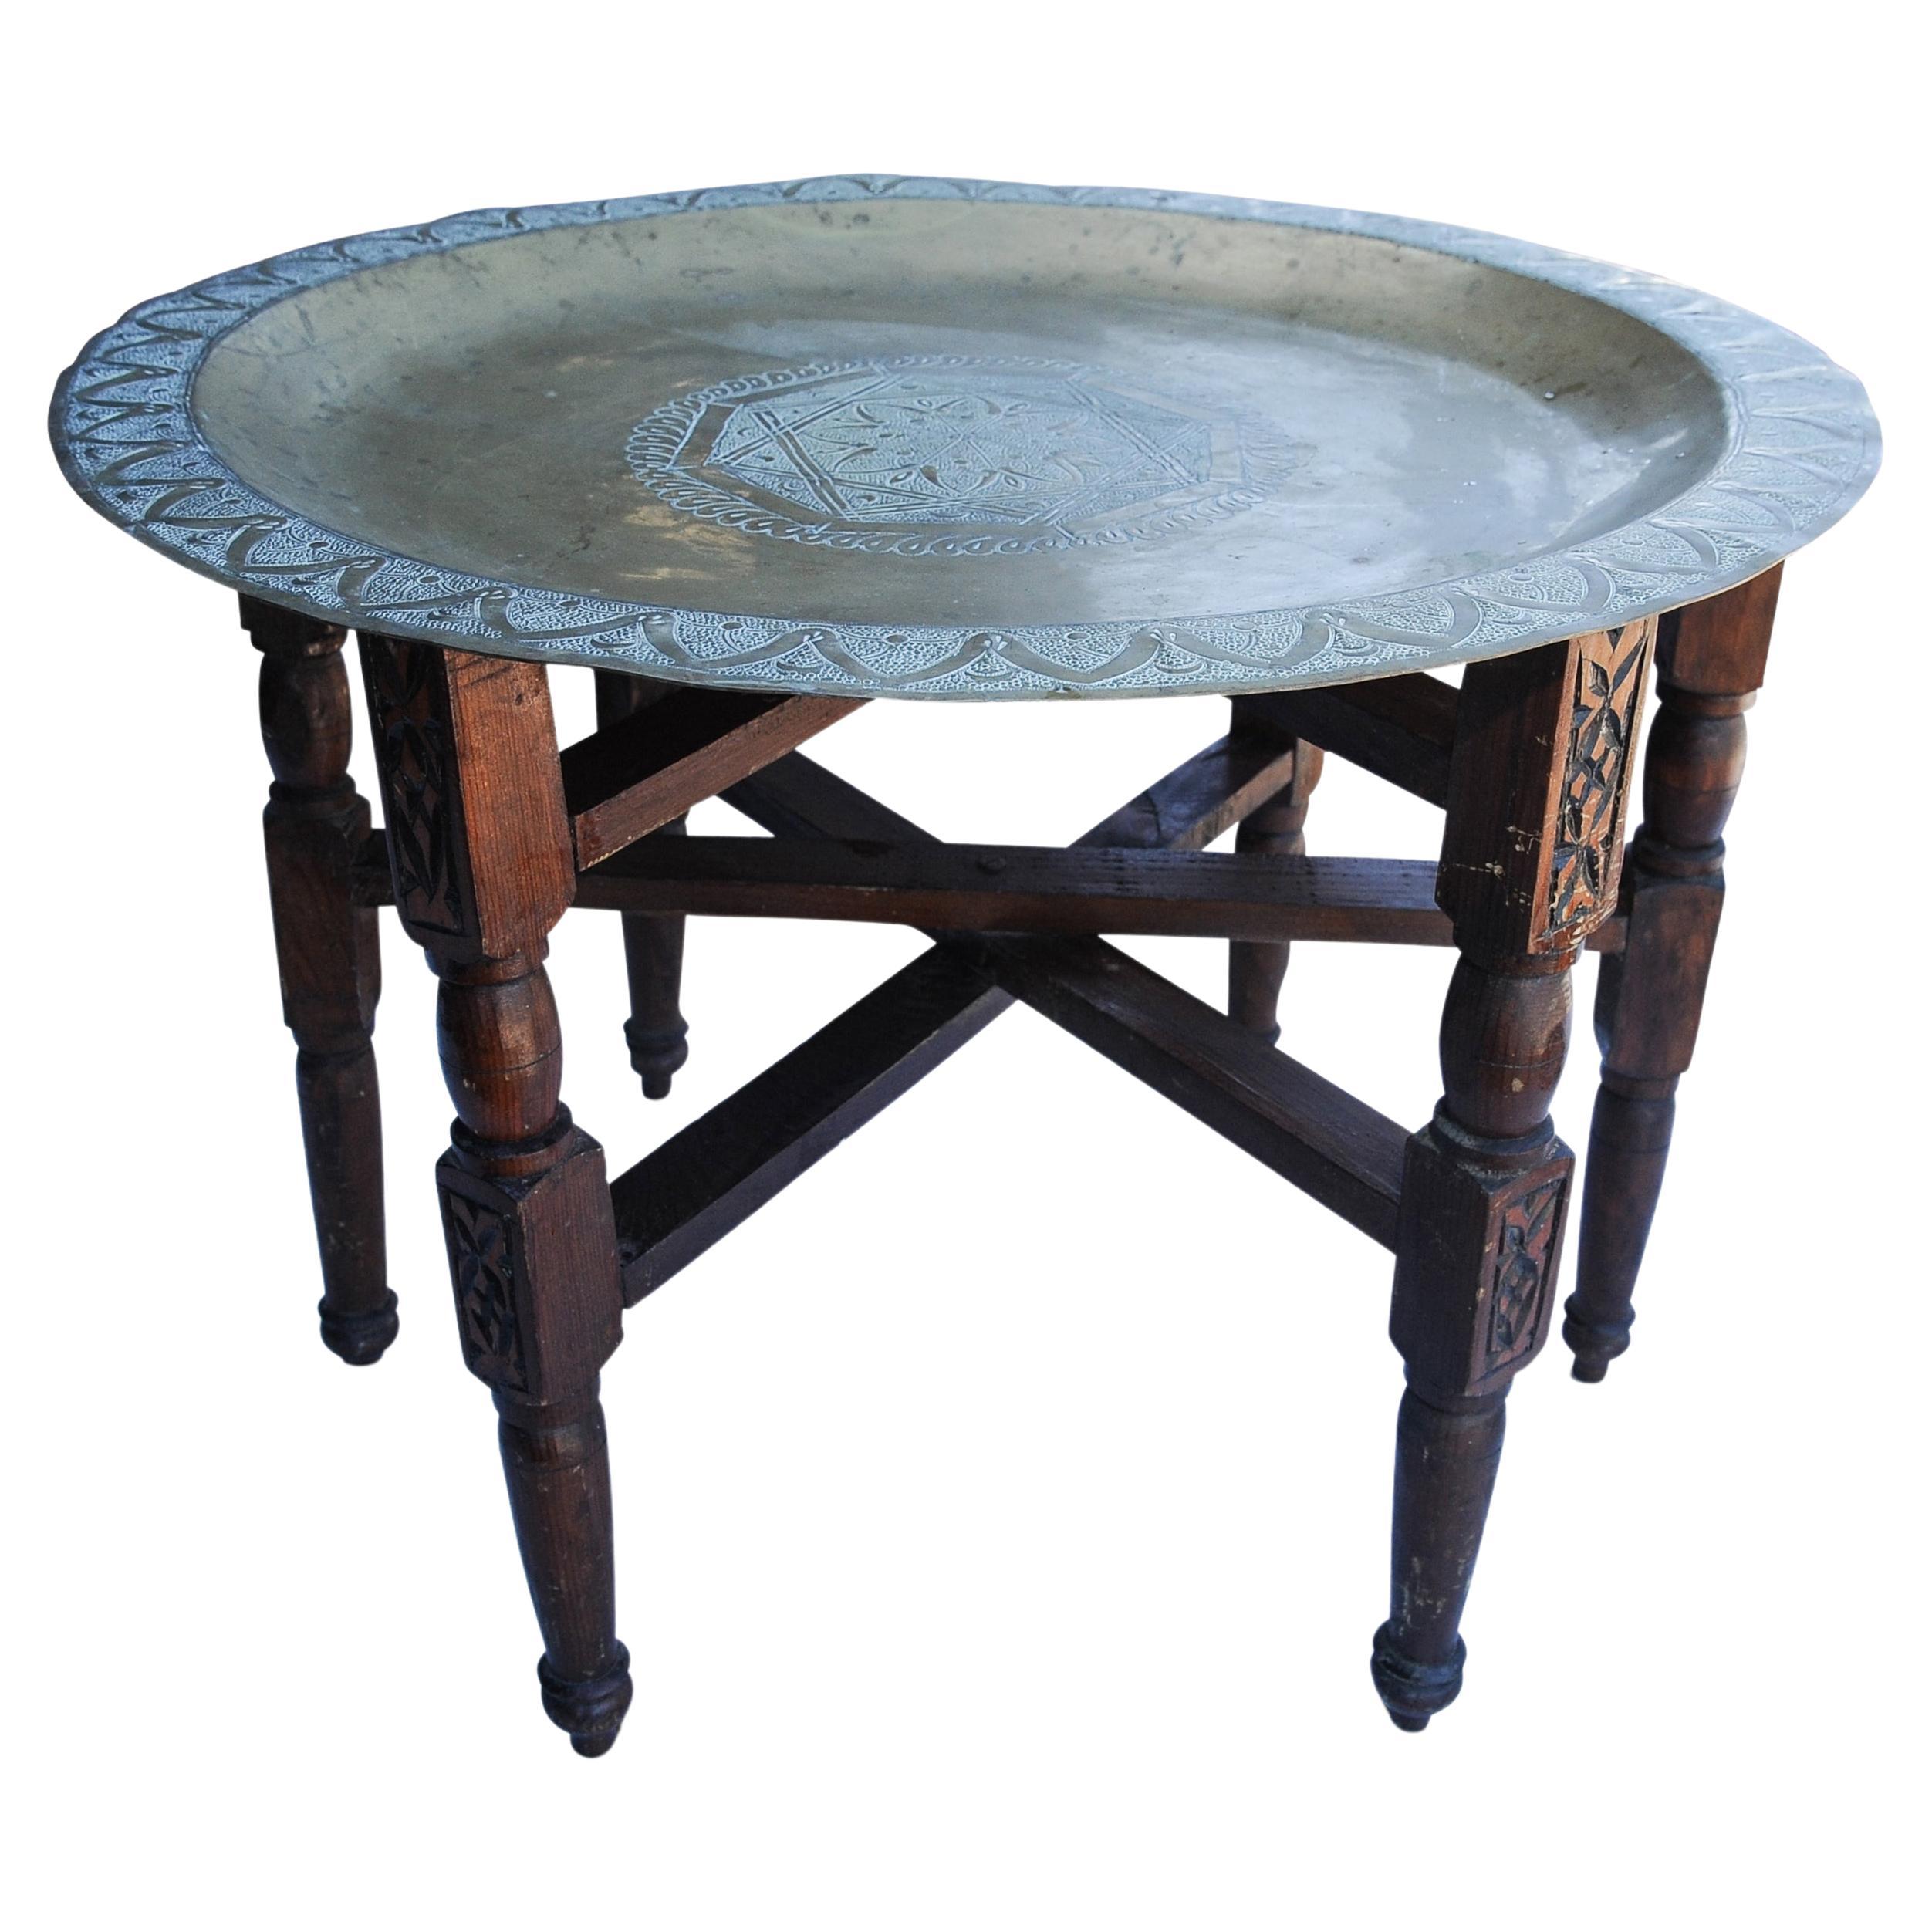 Teetisch aus Messing und Hartholz des 19. Jahrhunderts, verziert mit dekorativen Gravuren aus dem Nahen Osten. Das Tablett kann vom Rahmen abgehoben und separat verwendet werden. 

